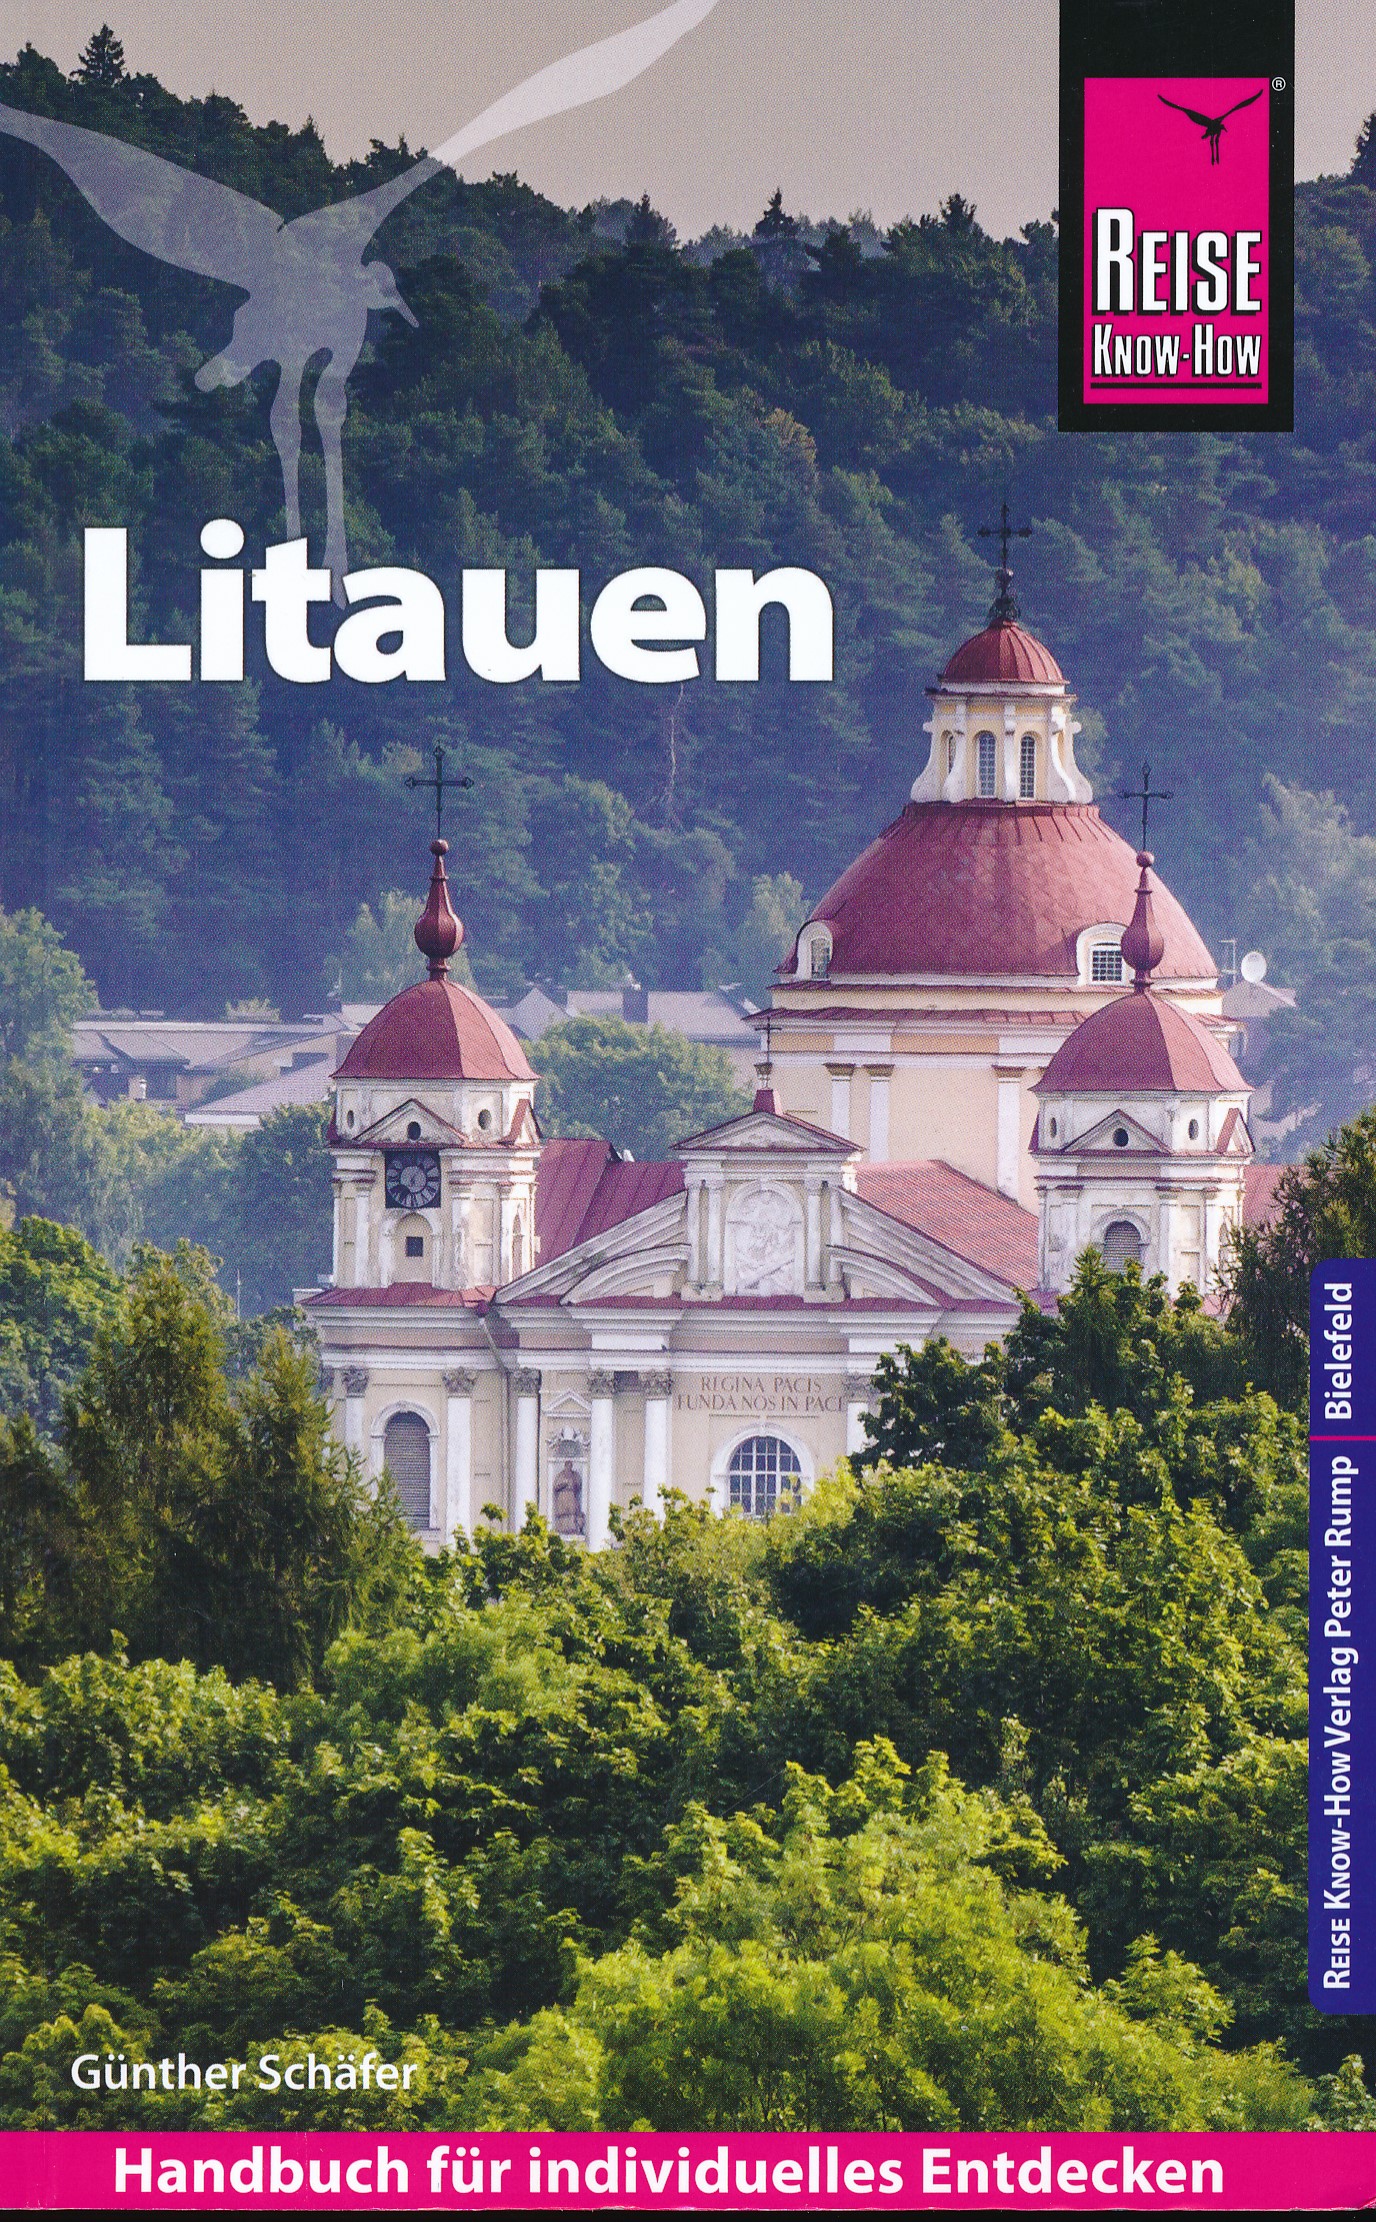 Online bestellen: Reisgids Litauen - Litouwen | Reise Know-How Verlag